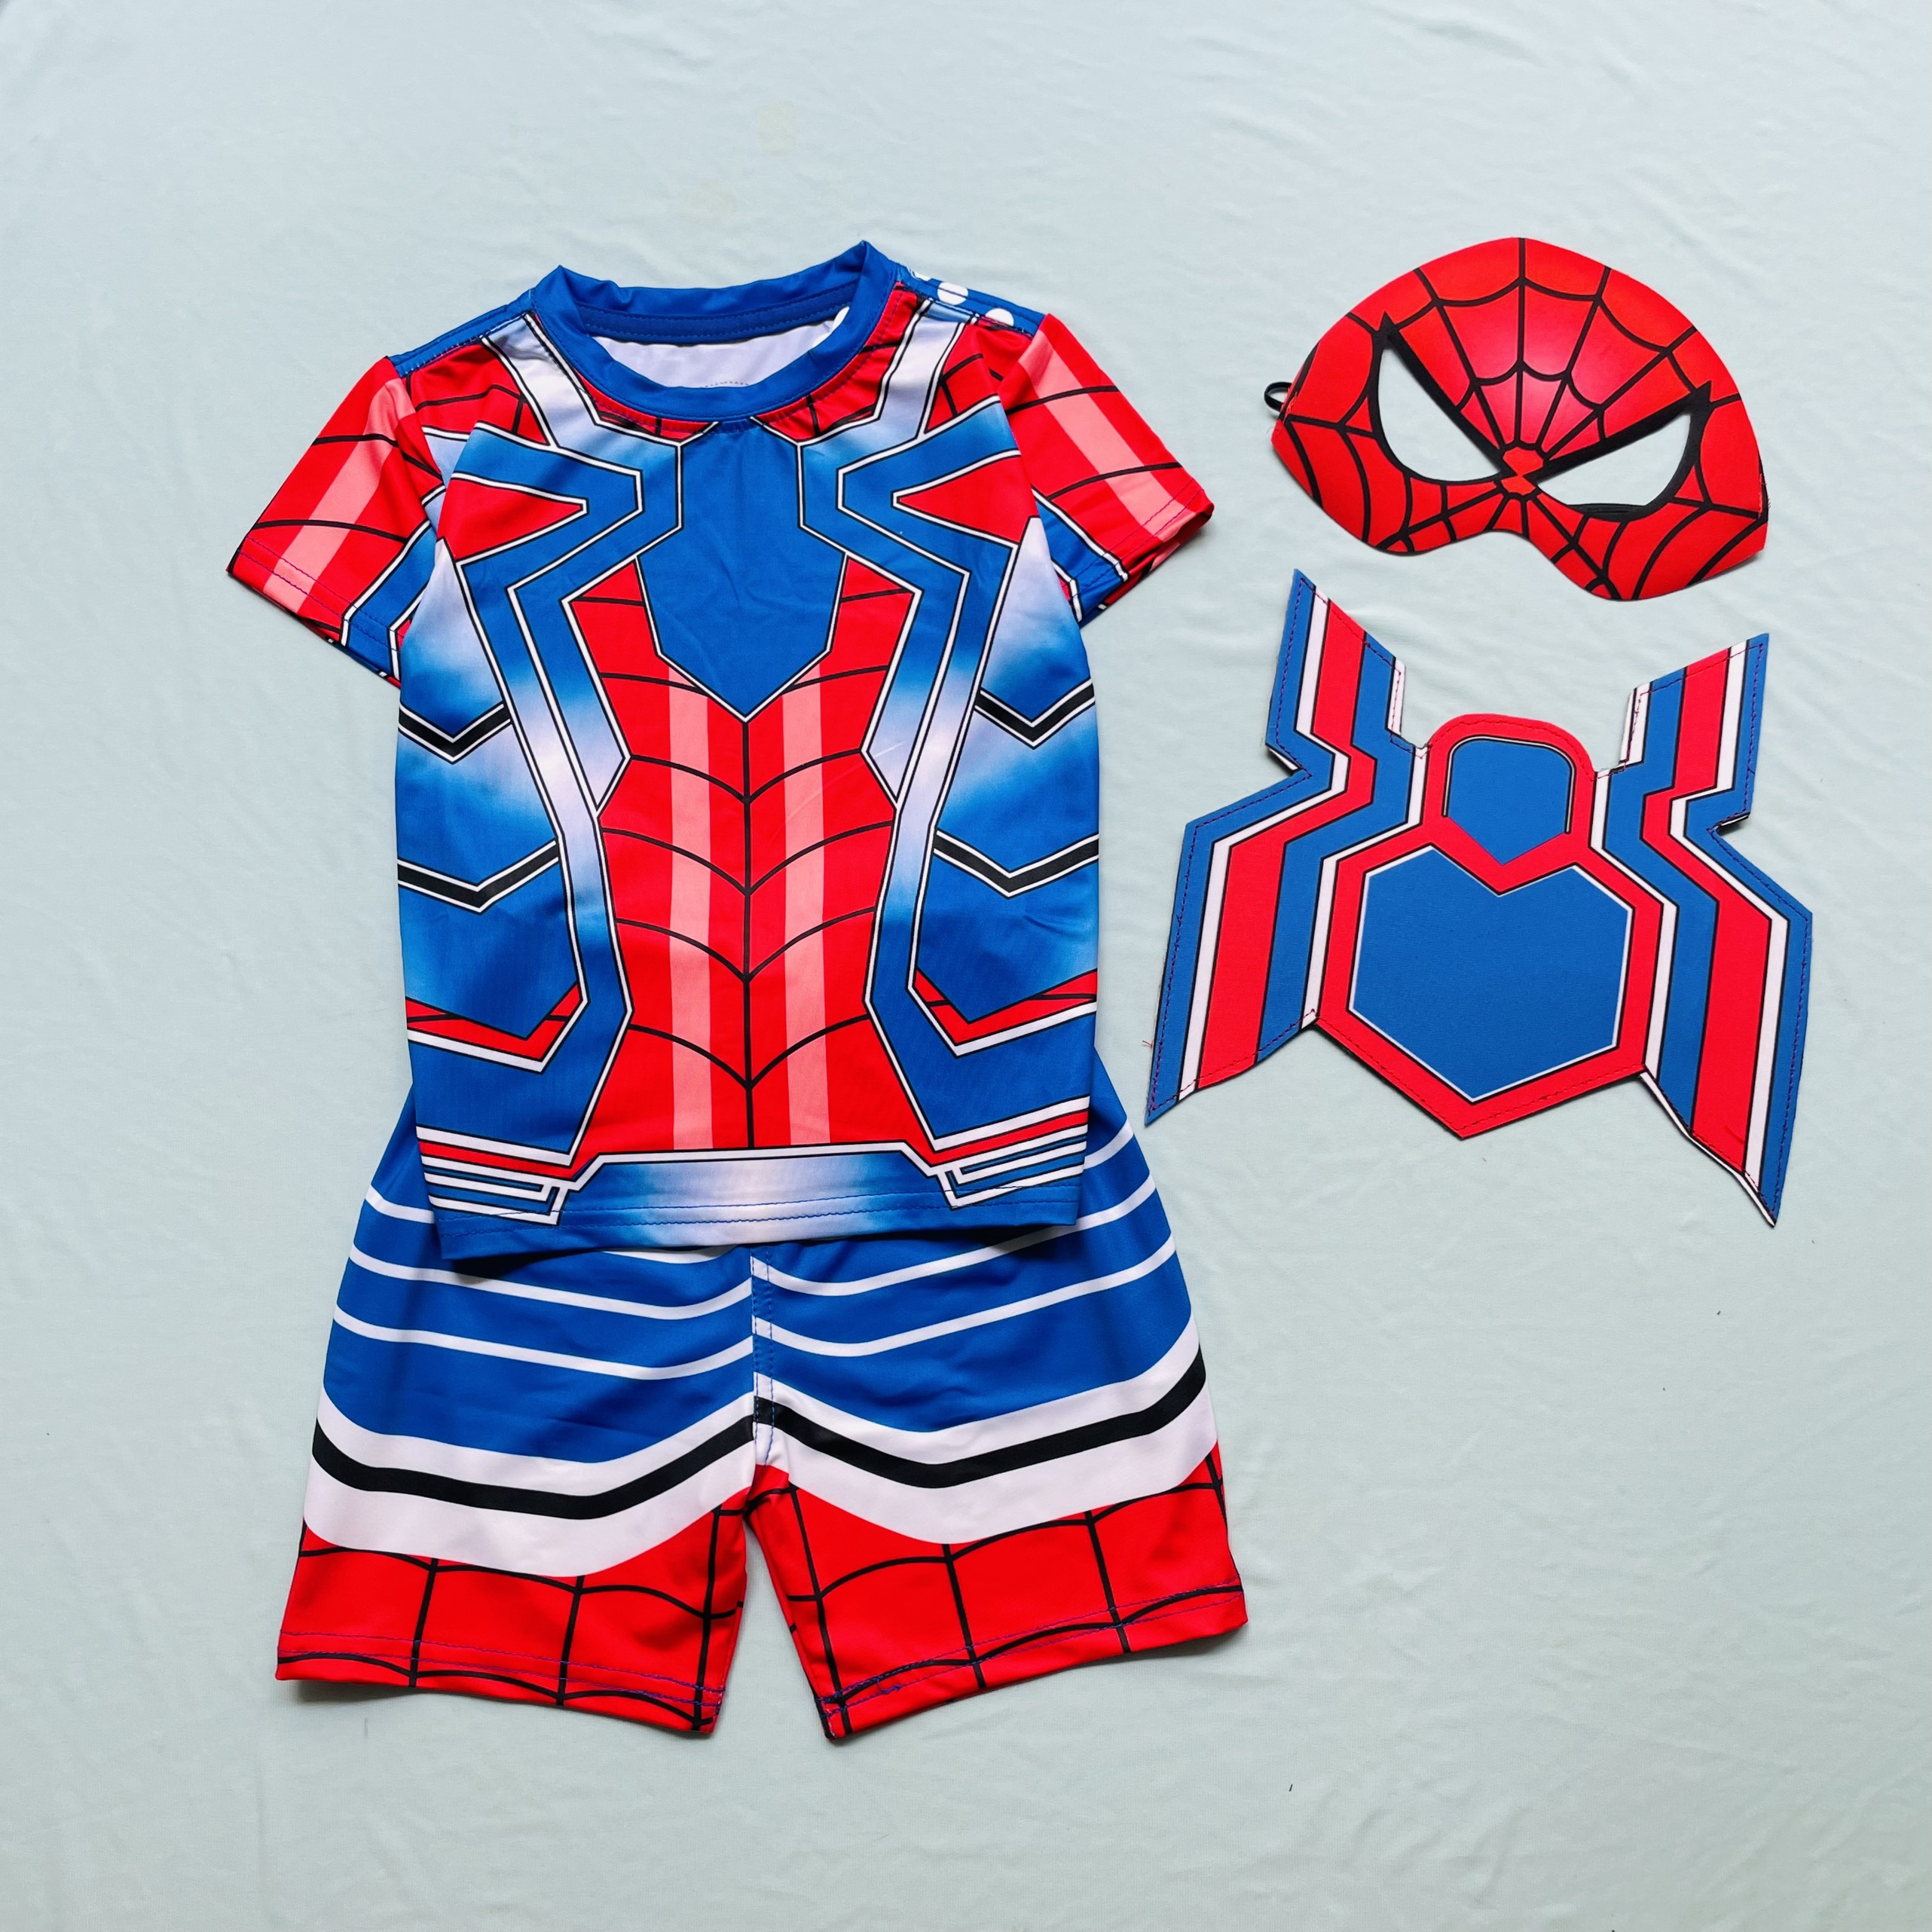 Bộ quần áo siêu nhân người nhện Spiderman bé trai B157 tặng kèm mặt nạ và khiên